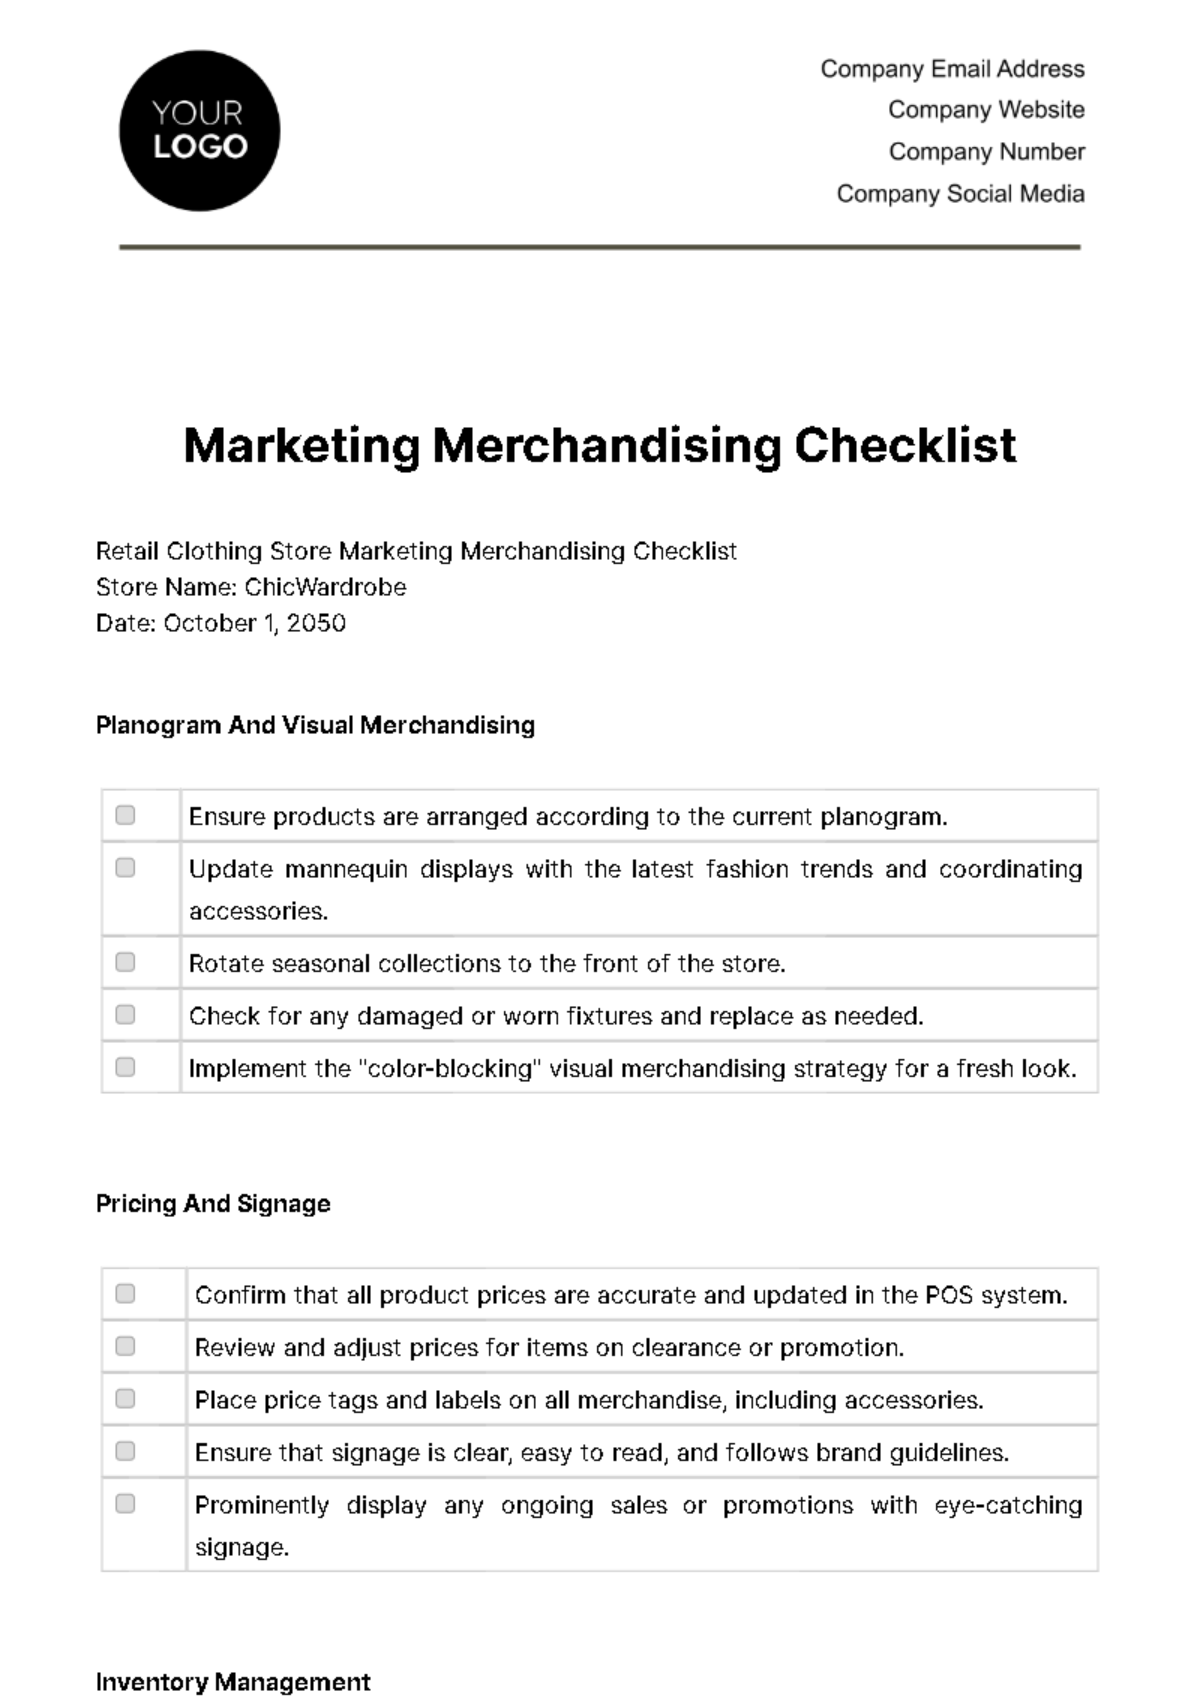 Marketing Merchandising Checklist Template